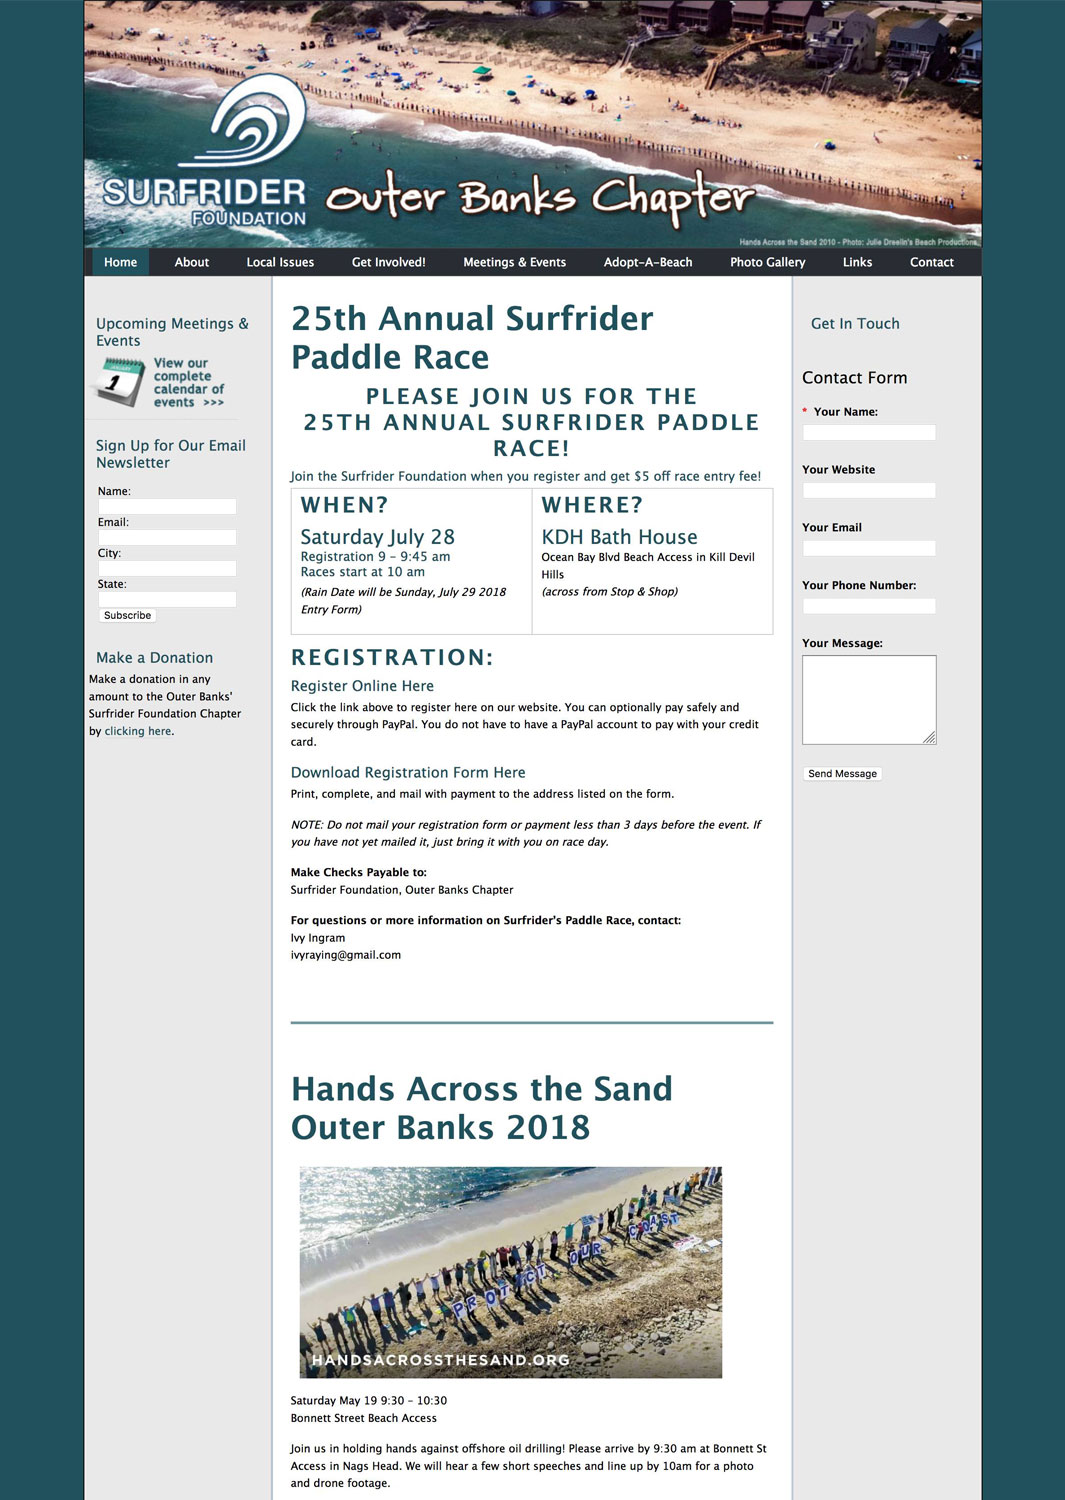 Surfrider Foundation, Outer Banks Chapter Website